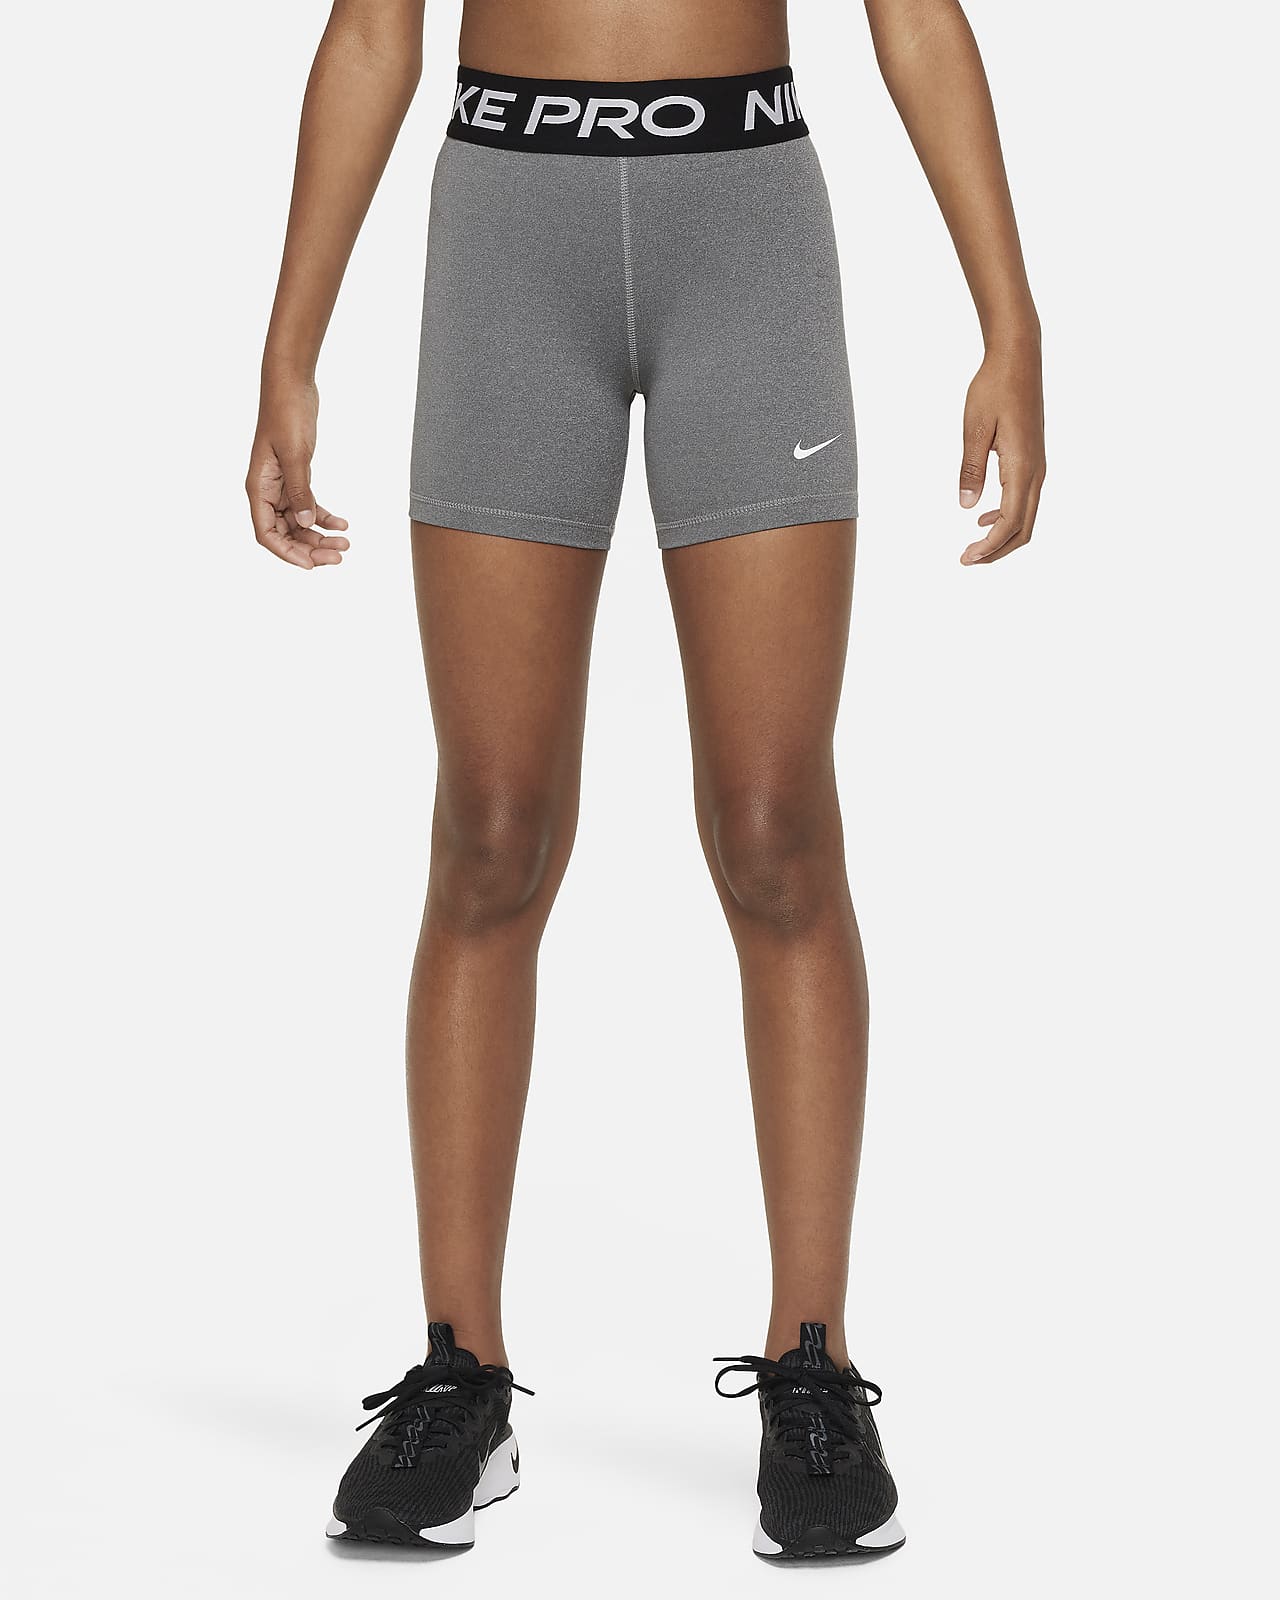 Nike Pro girls shorts